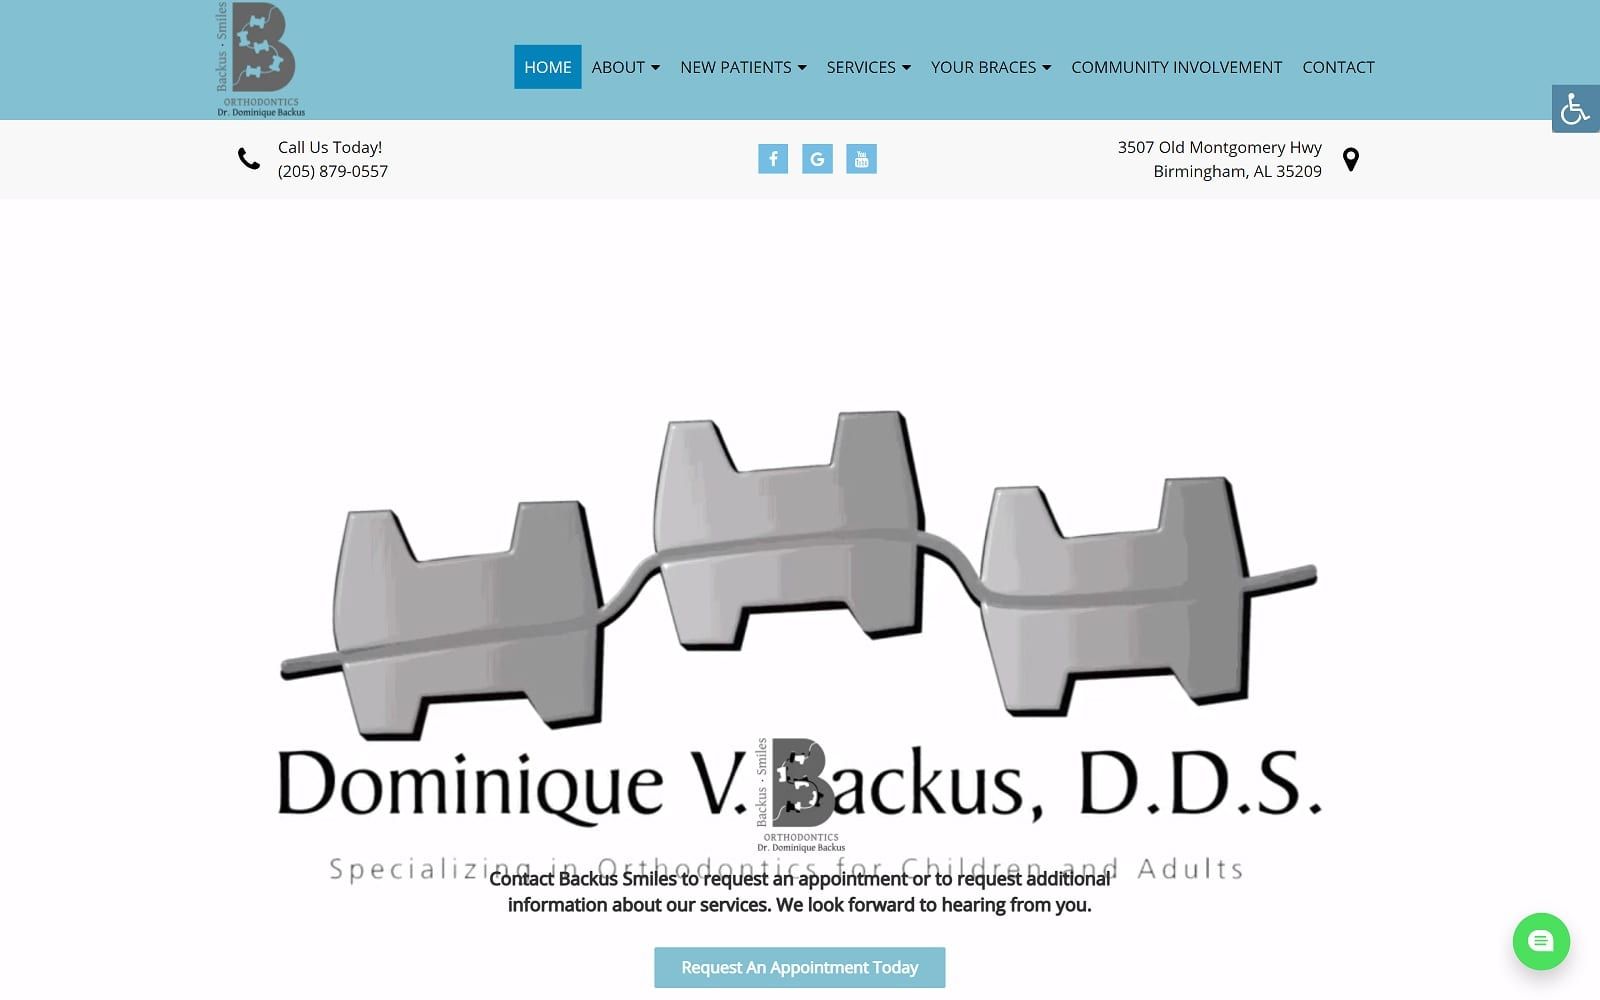 The screenshot of dominique v. Backus, d. D. S. Backusbraces. Com website